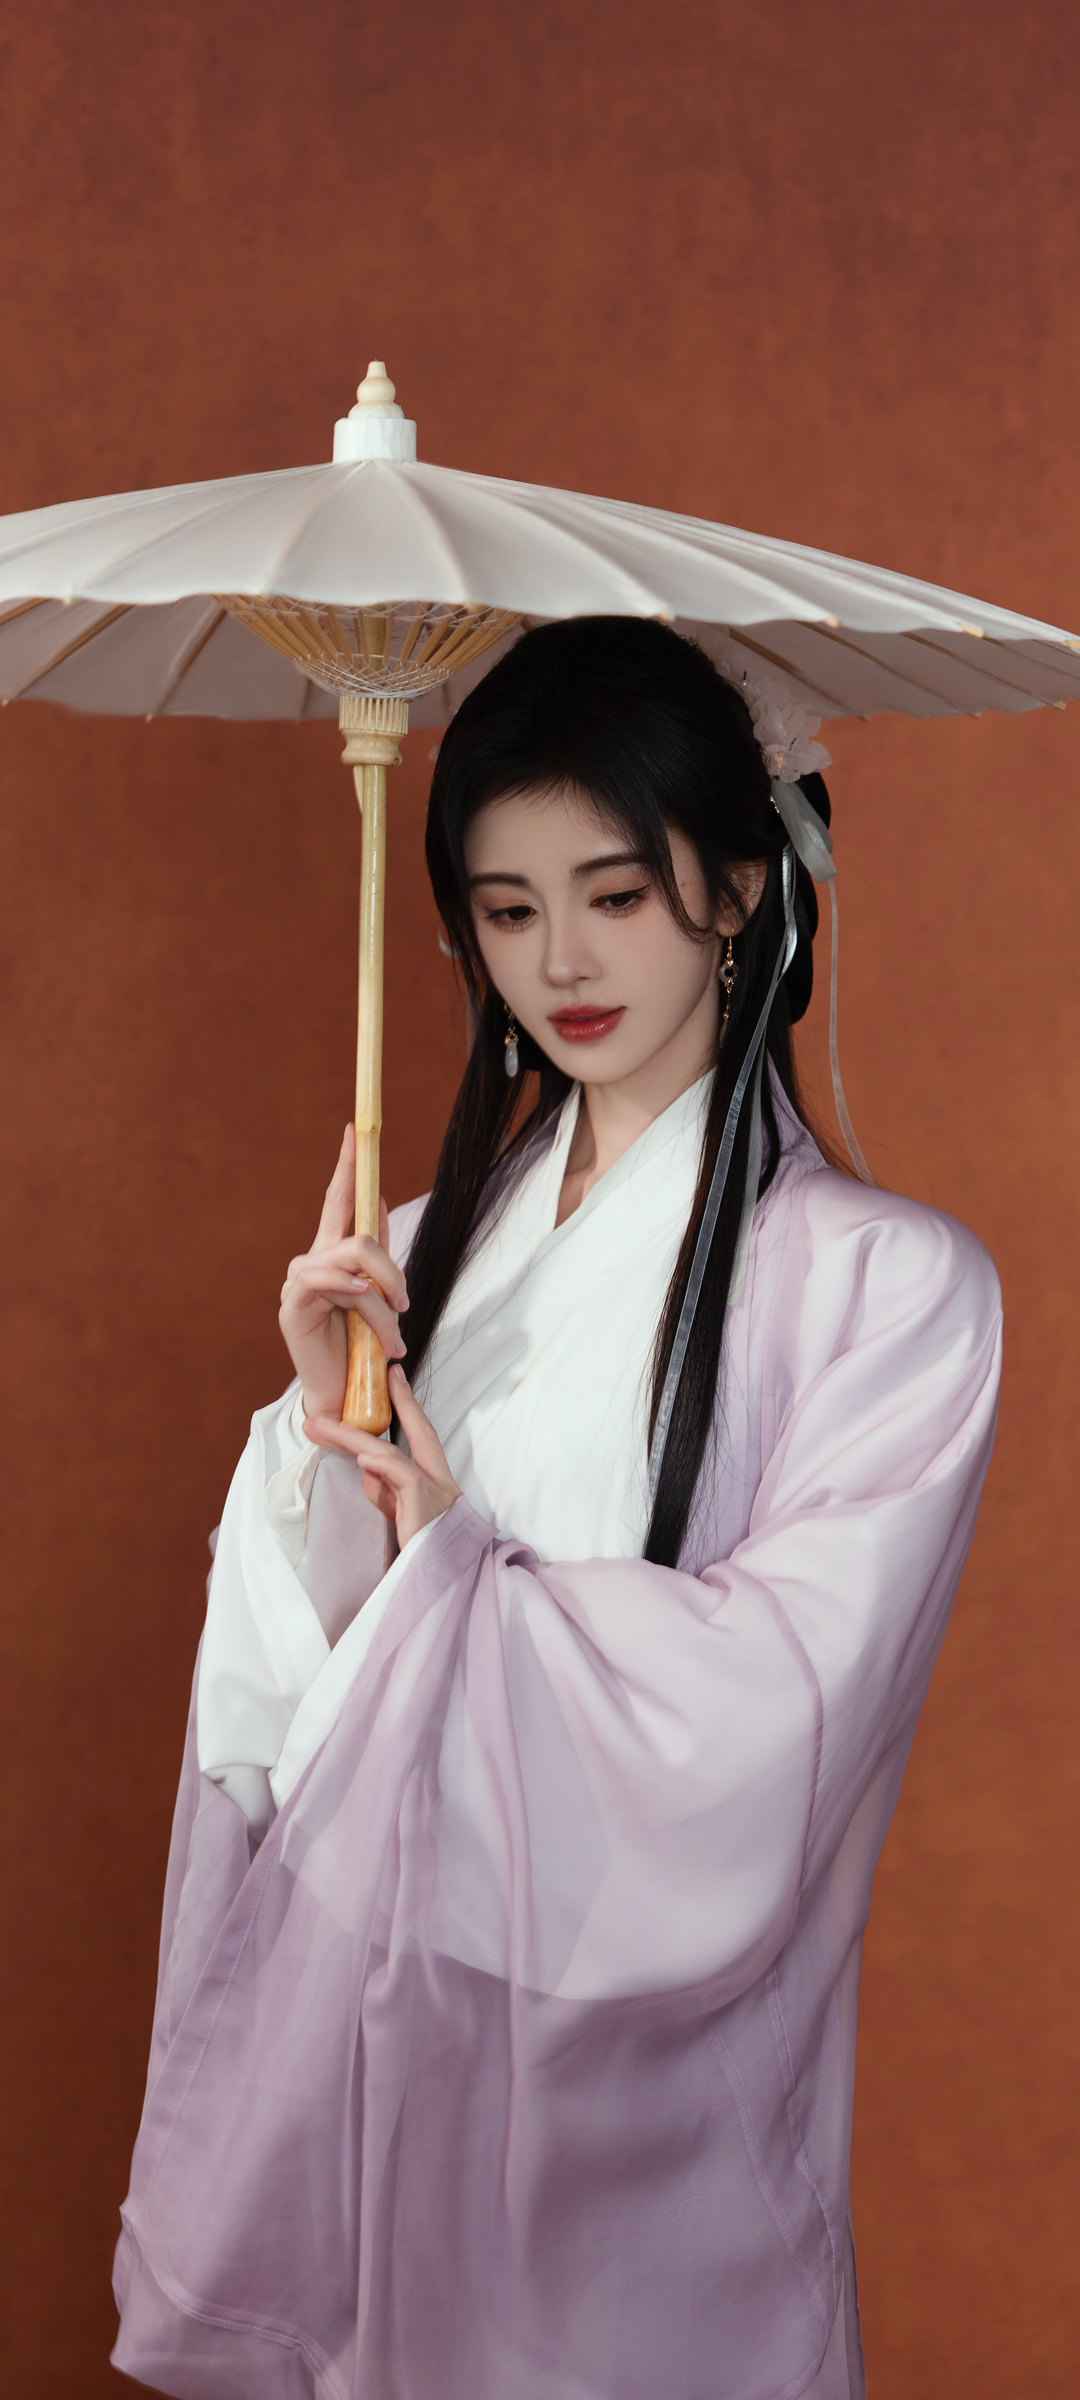 鞠婧祎 古风 伞 唯美美女手机壁纸背景